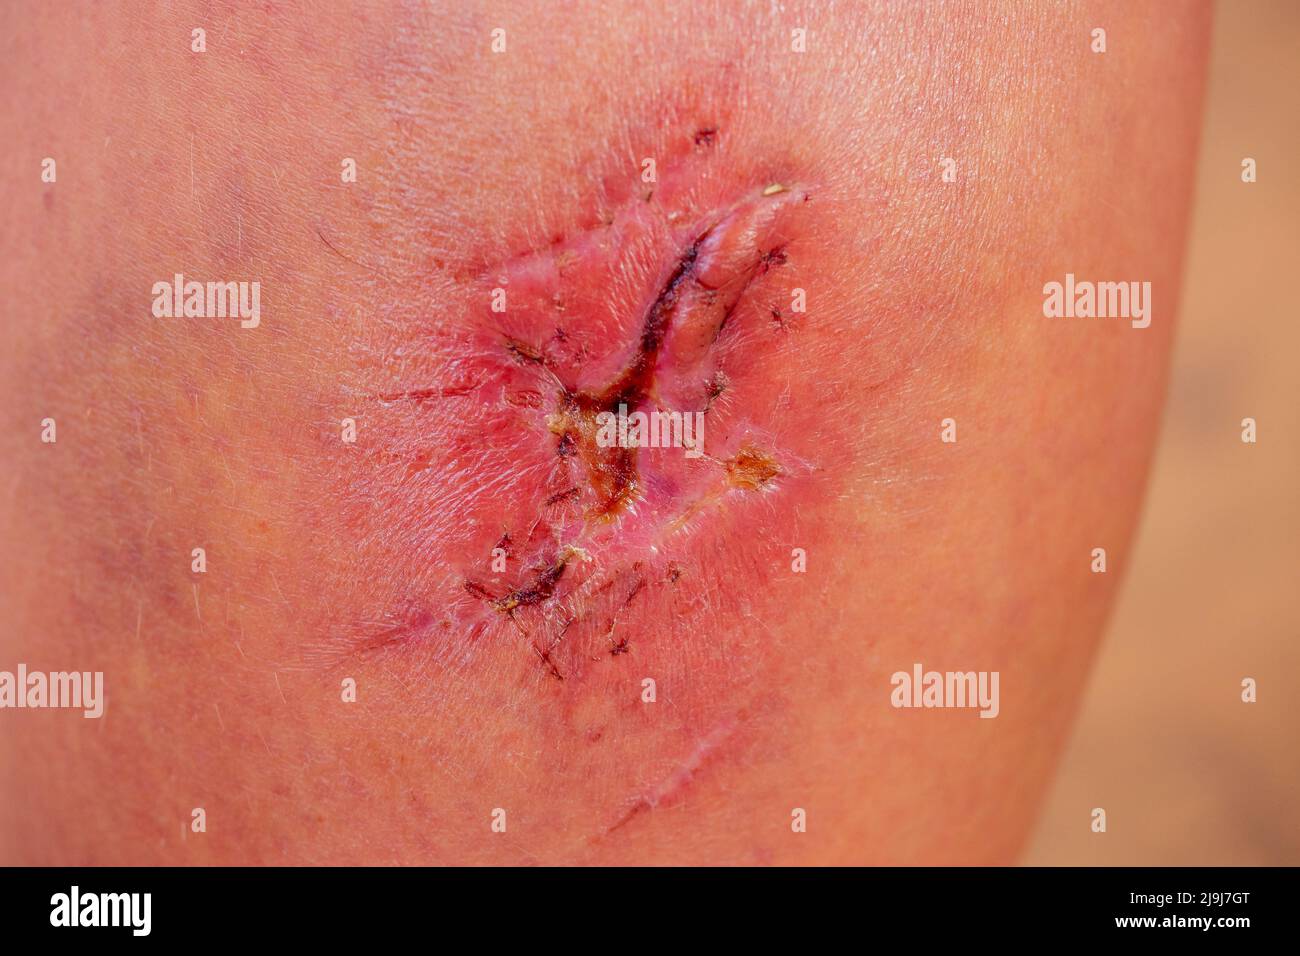 Gros plan de la cicatrice cyanotique keloïde causée par la chirurgie et la suture, les imperfections ou les défauts de la peau. Dermatologie et cosmétologie Banque D'Images